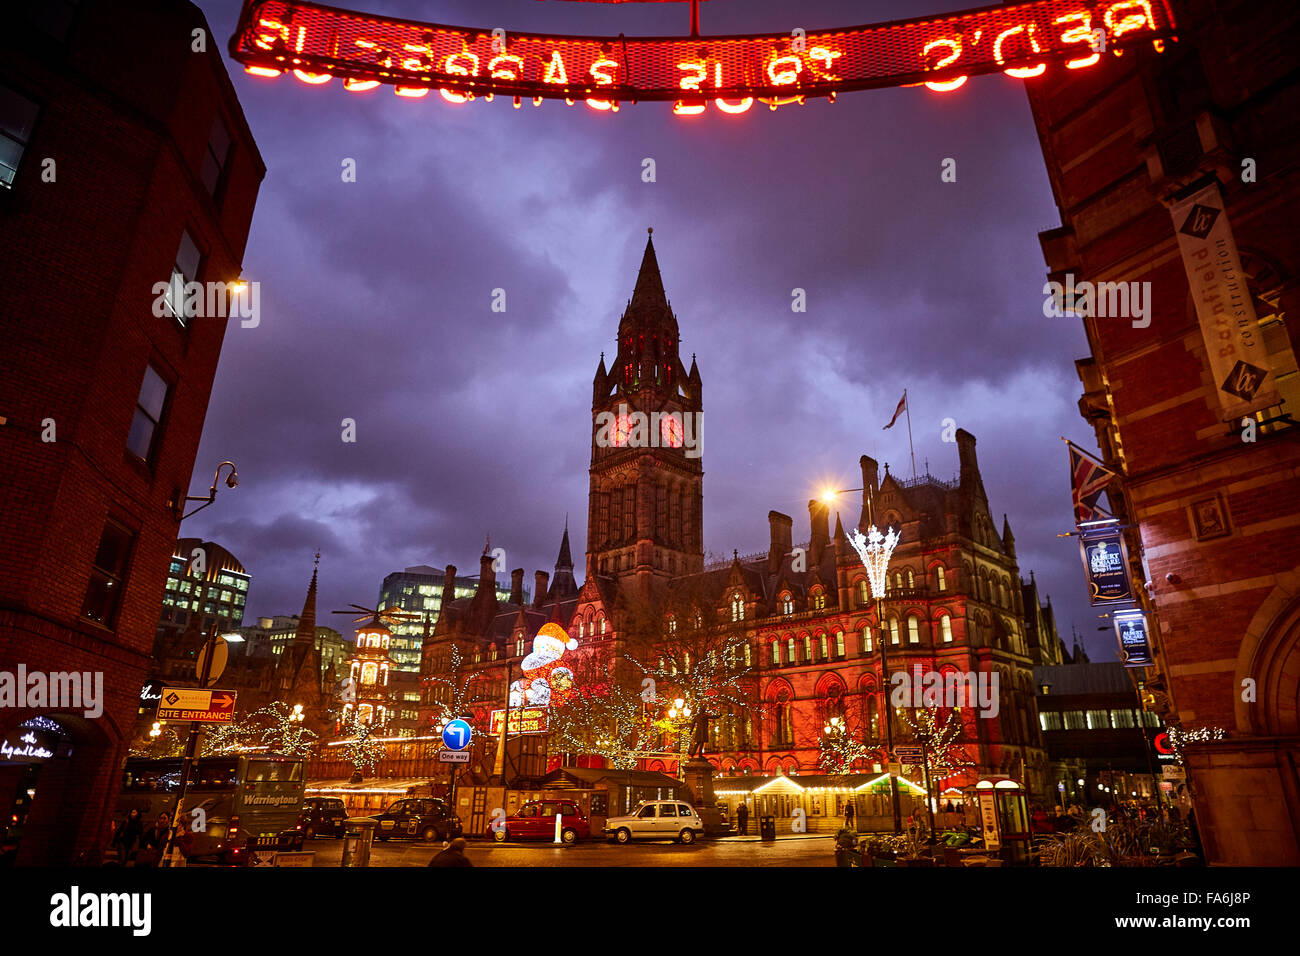 Manchester-deutsche Weihnachtsmärkte am Albert Square vor dem Wahrzeichen Rathaus Märkte legen Ausbildung Händler kleine b Stockfoto